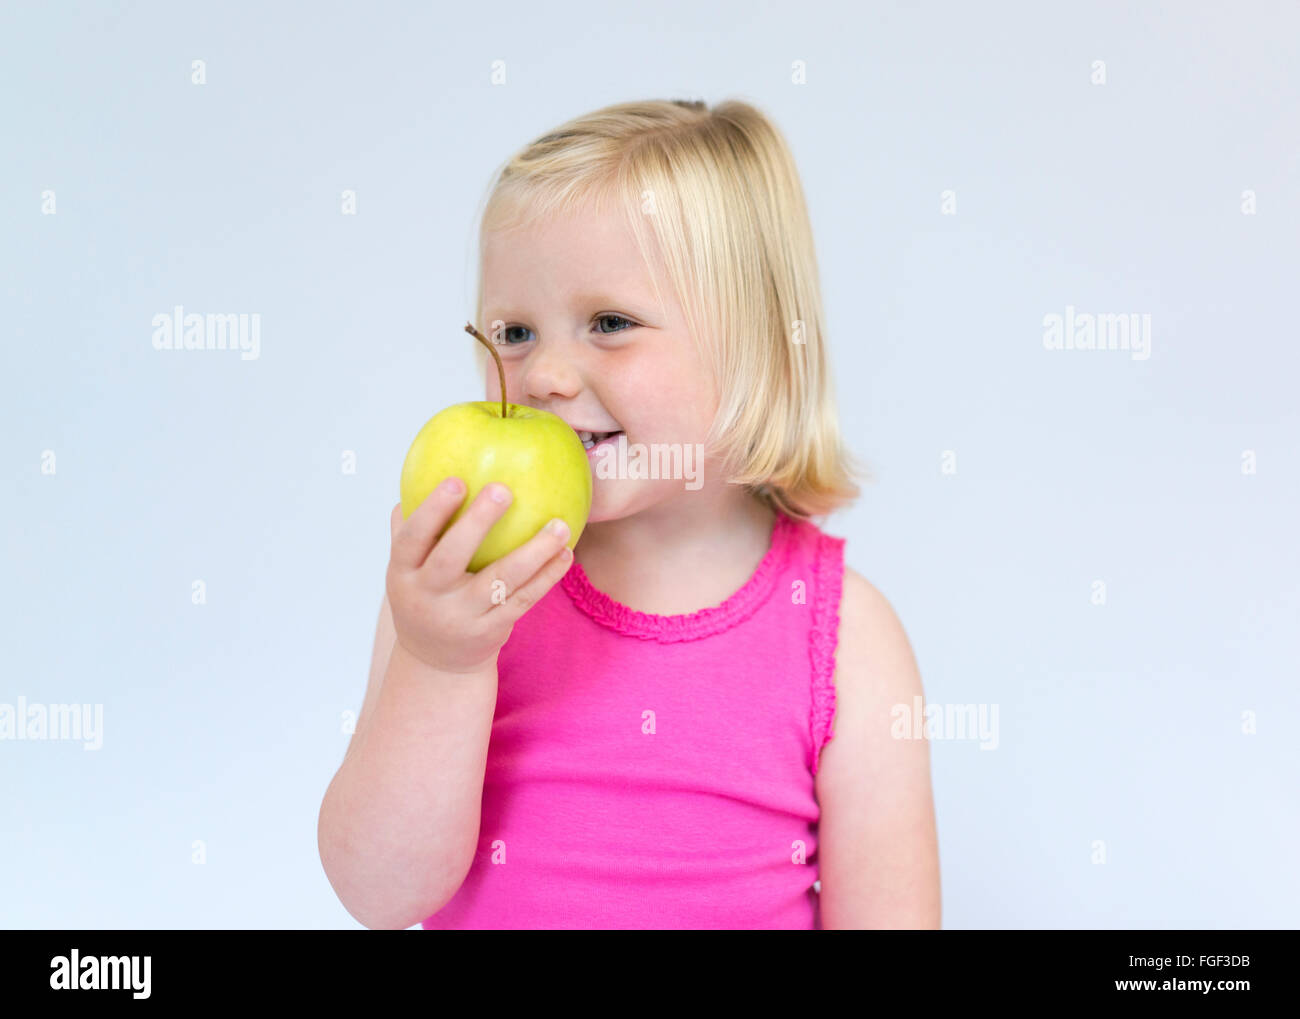 Ragazza giovane con capelli biondi tenendo una mela verde sorridente Foto Stock